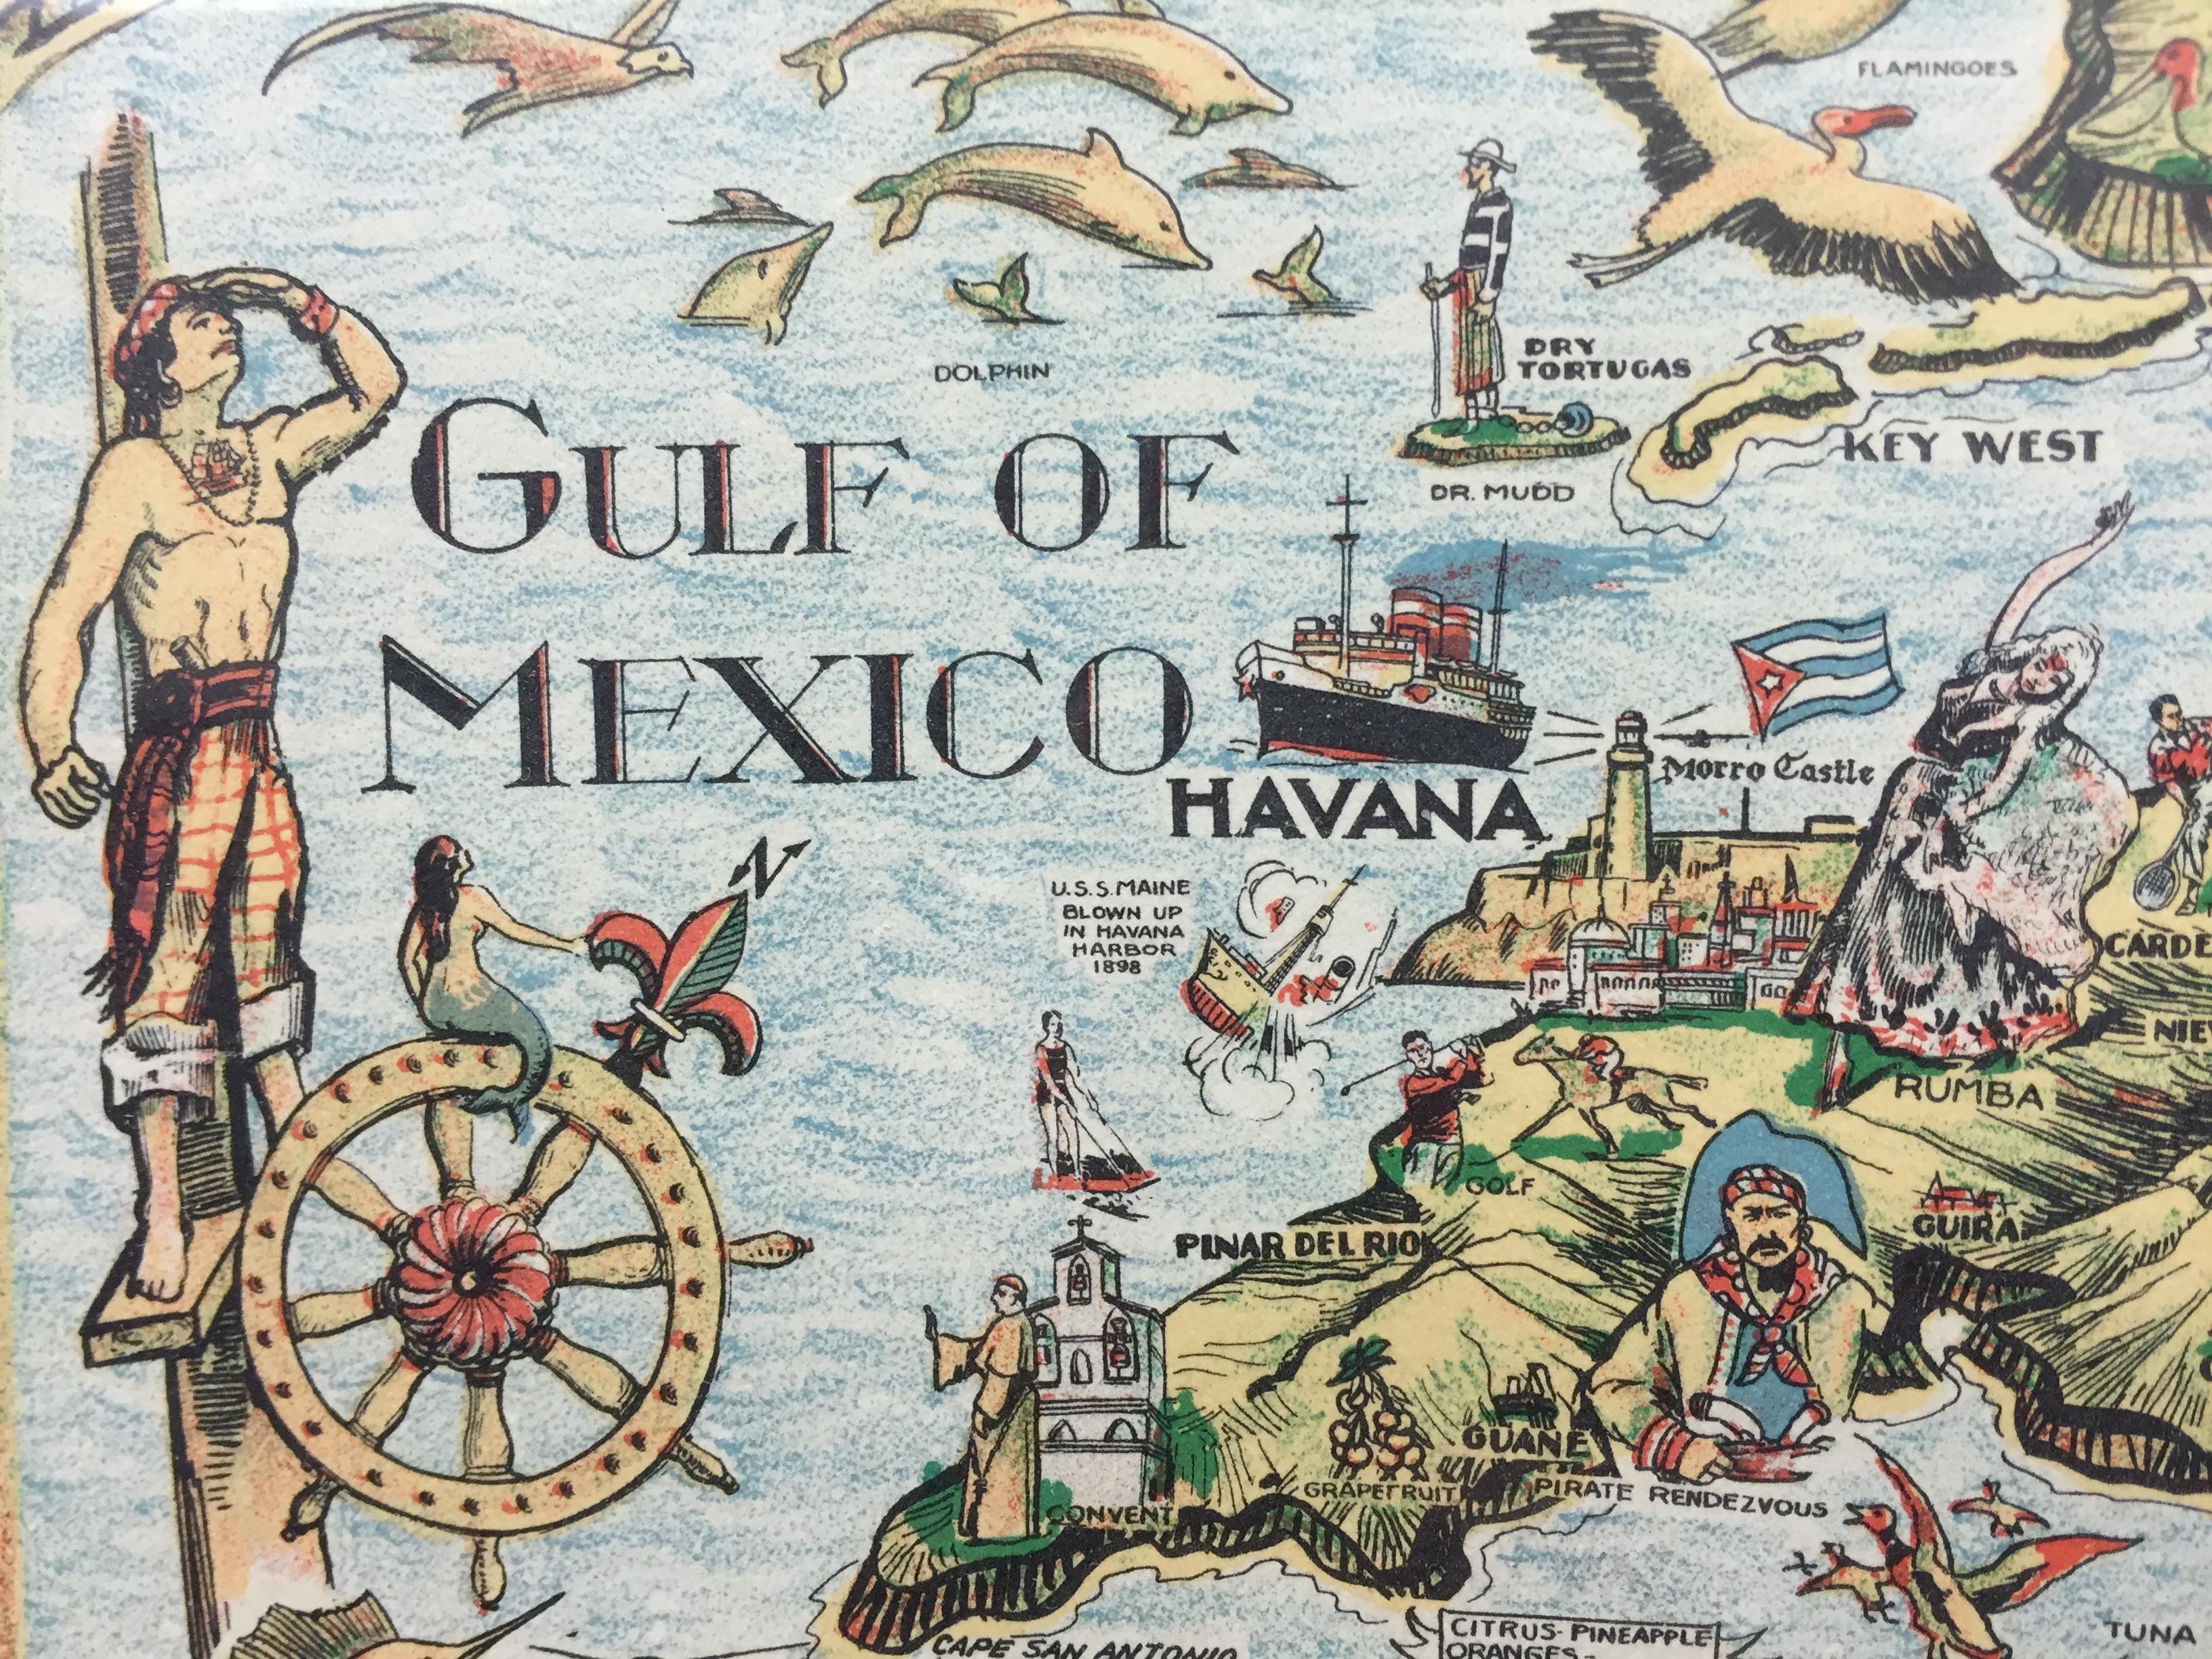 Carte en couleurs des Antilles publiée en 1936, encadrée, avec un motif de bordure inspiré de l'artisanat antillais et des fruits tropicaux indigènes.

Colortext Publication, Inc. Chicago (États-Unis)

Art Sz : 12 3/4 